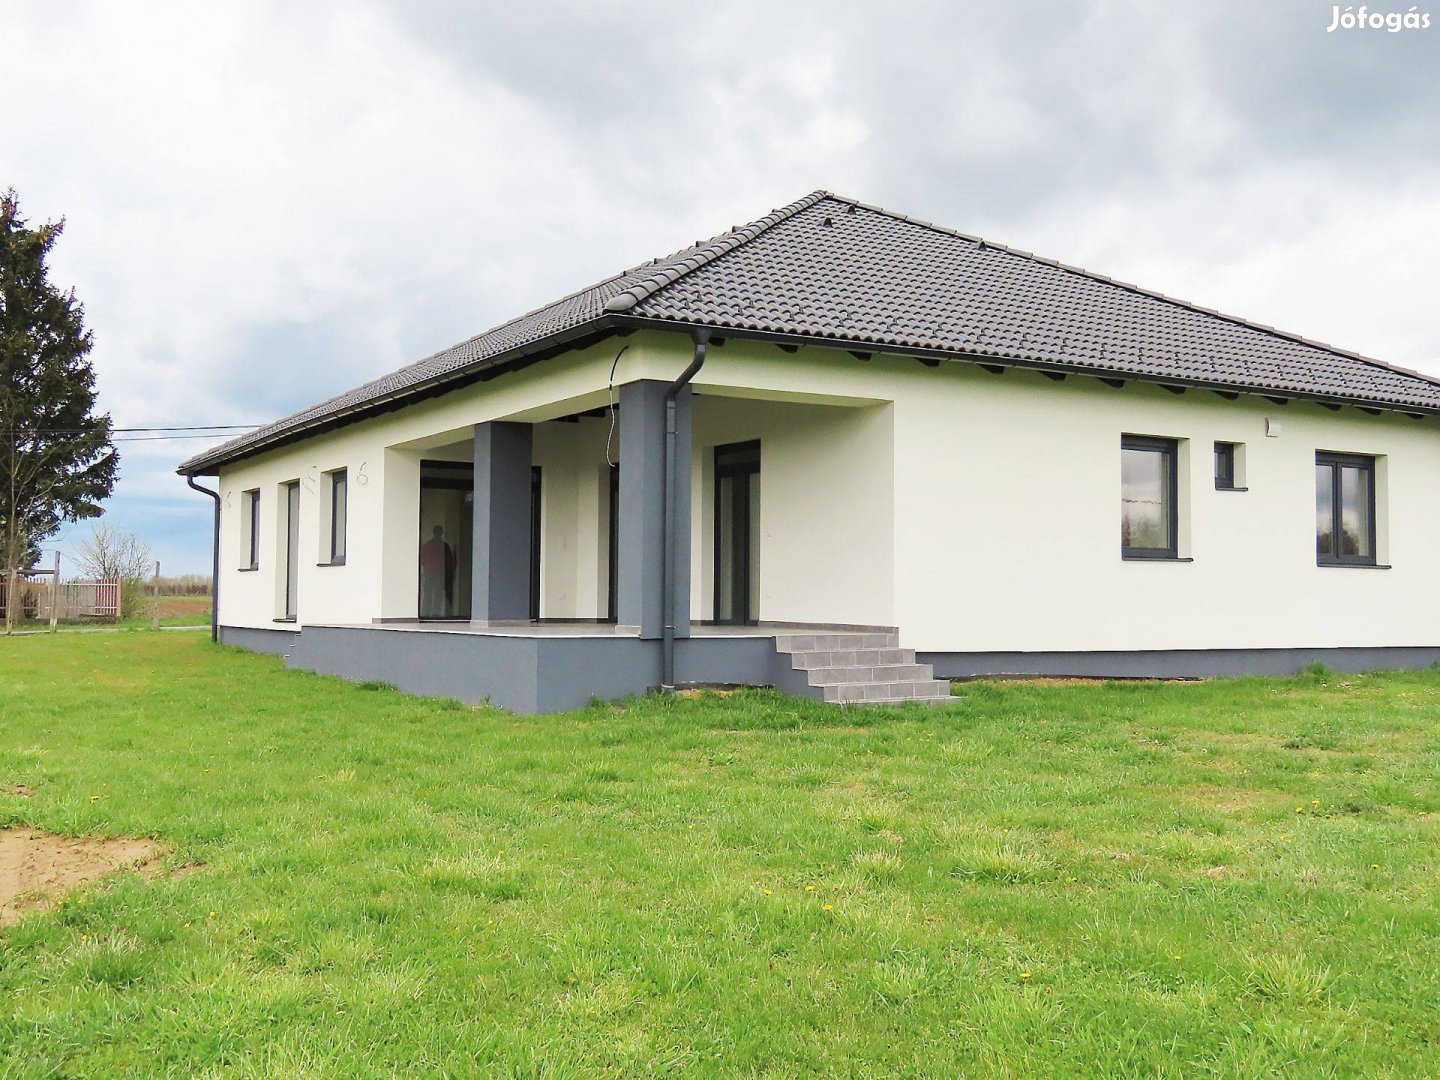 Zalaegerszegen eladó egy újszerű, igényesen megépített családi ház